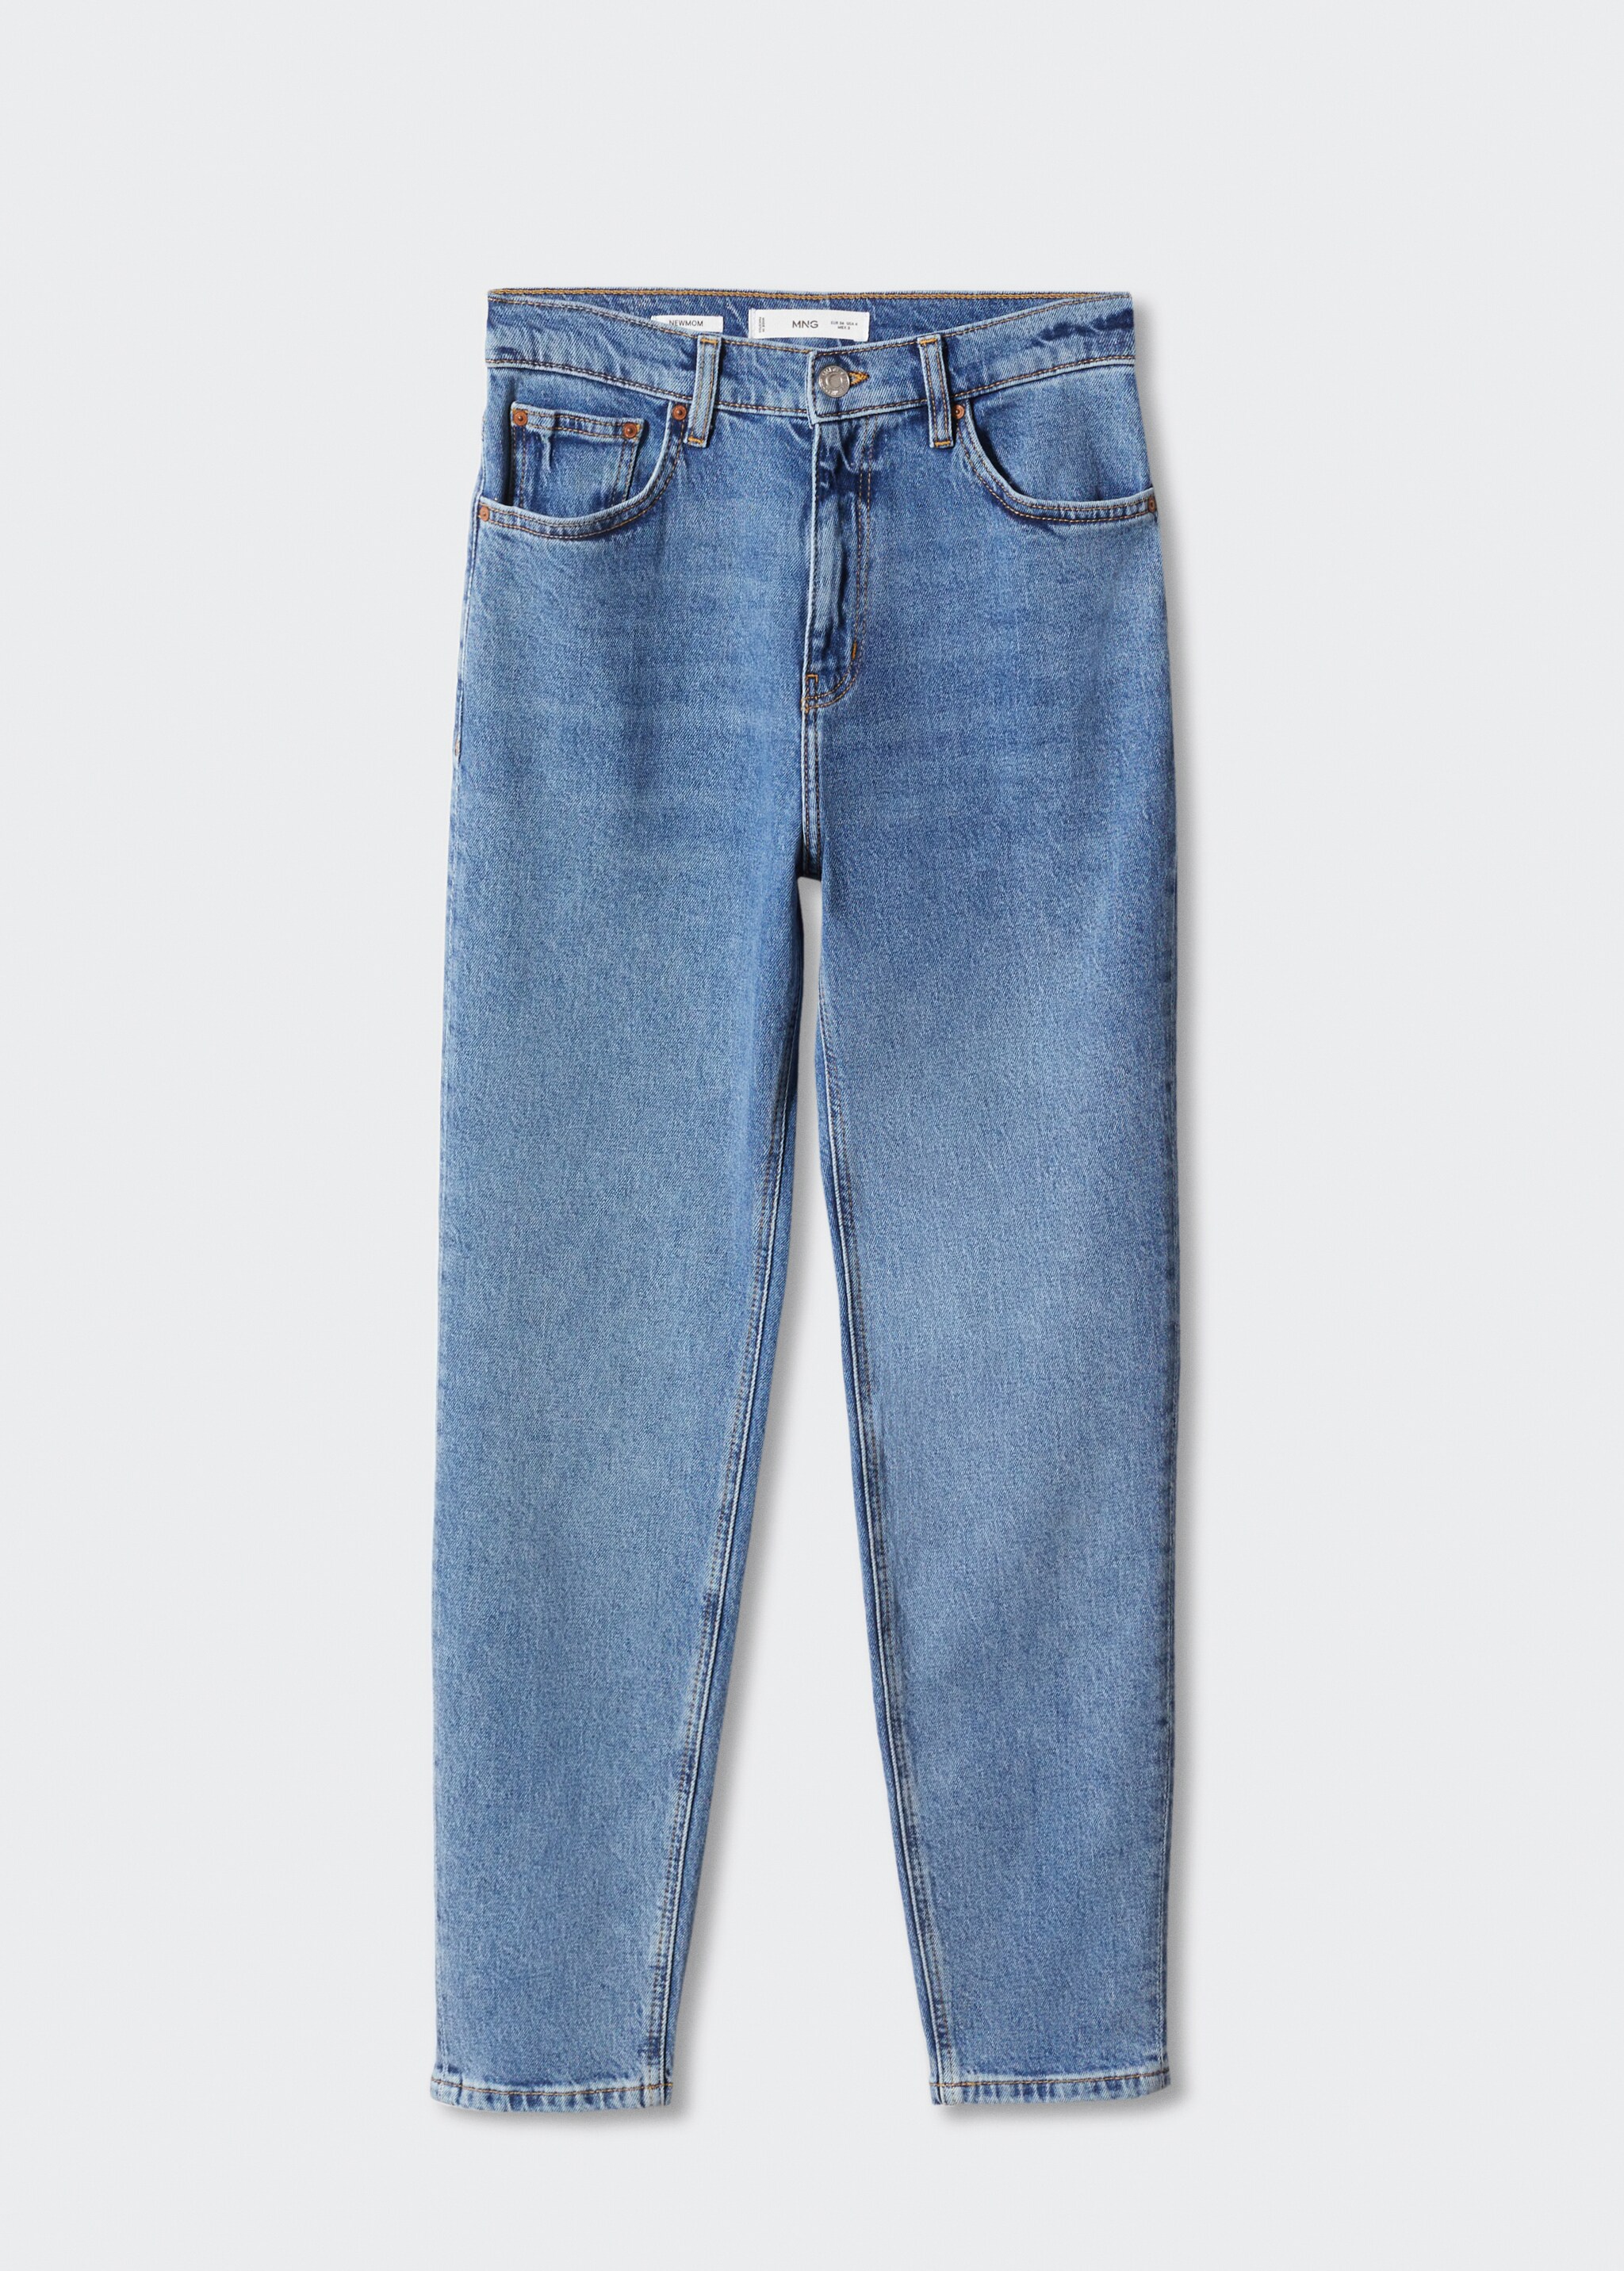 Jeans mom comfort vita alta - Articolo senza modello